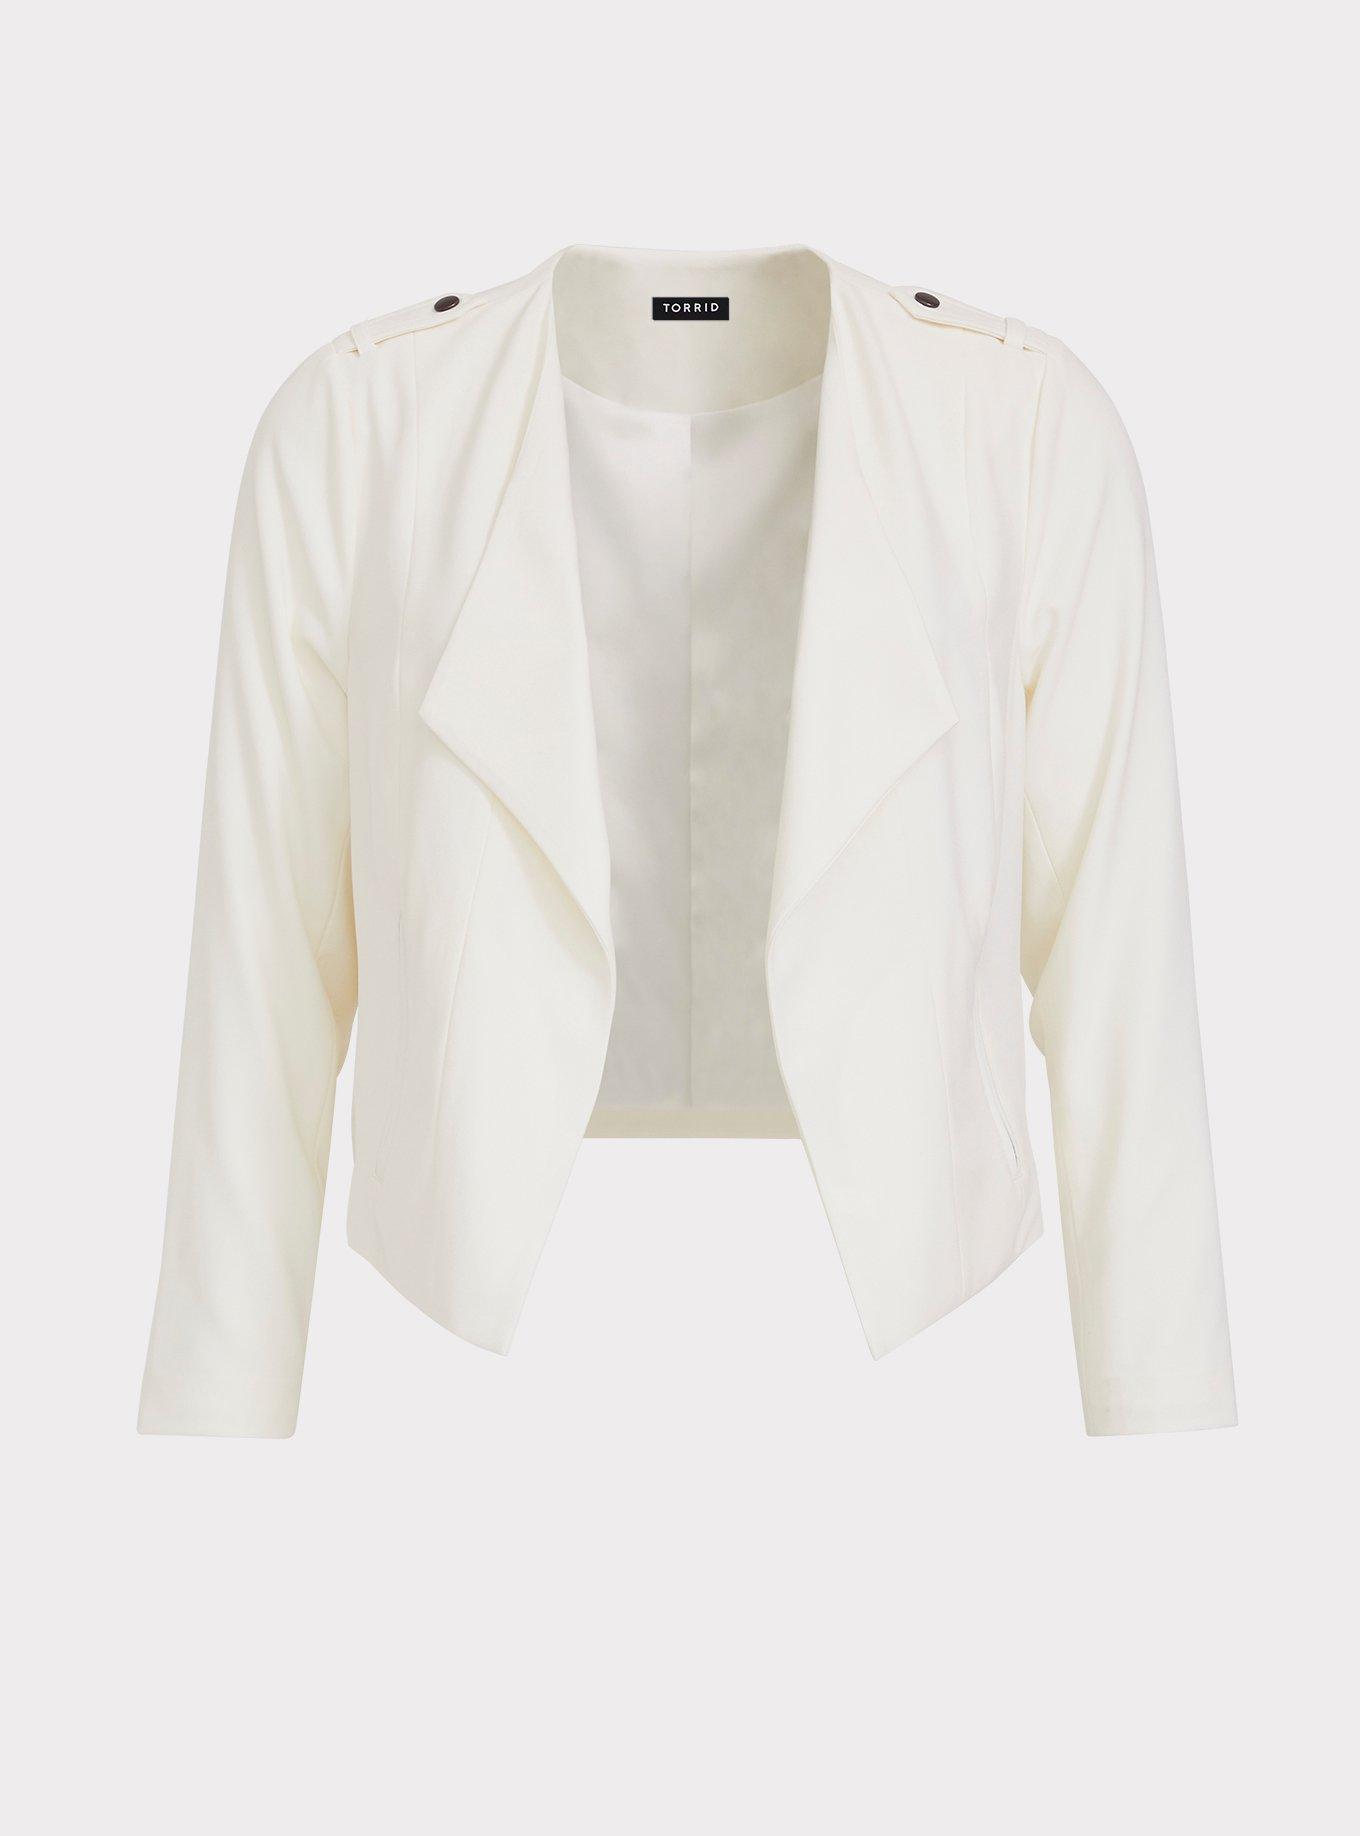 Plus Size - White Drape Crepe Jacket - Torrid